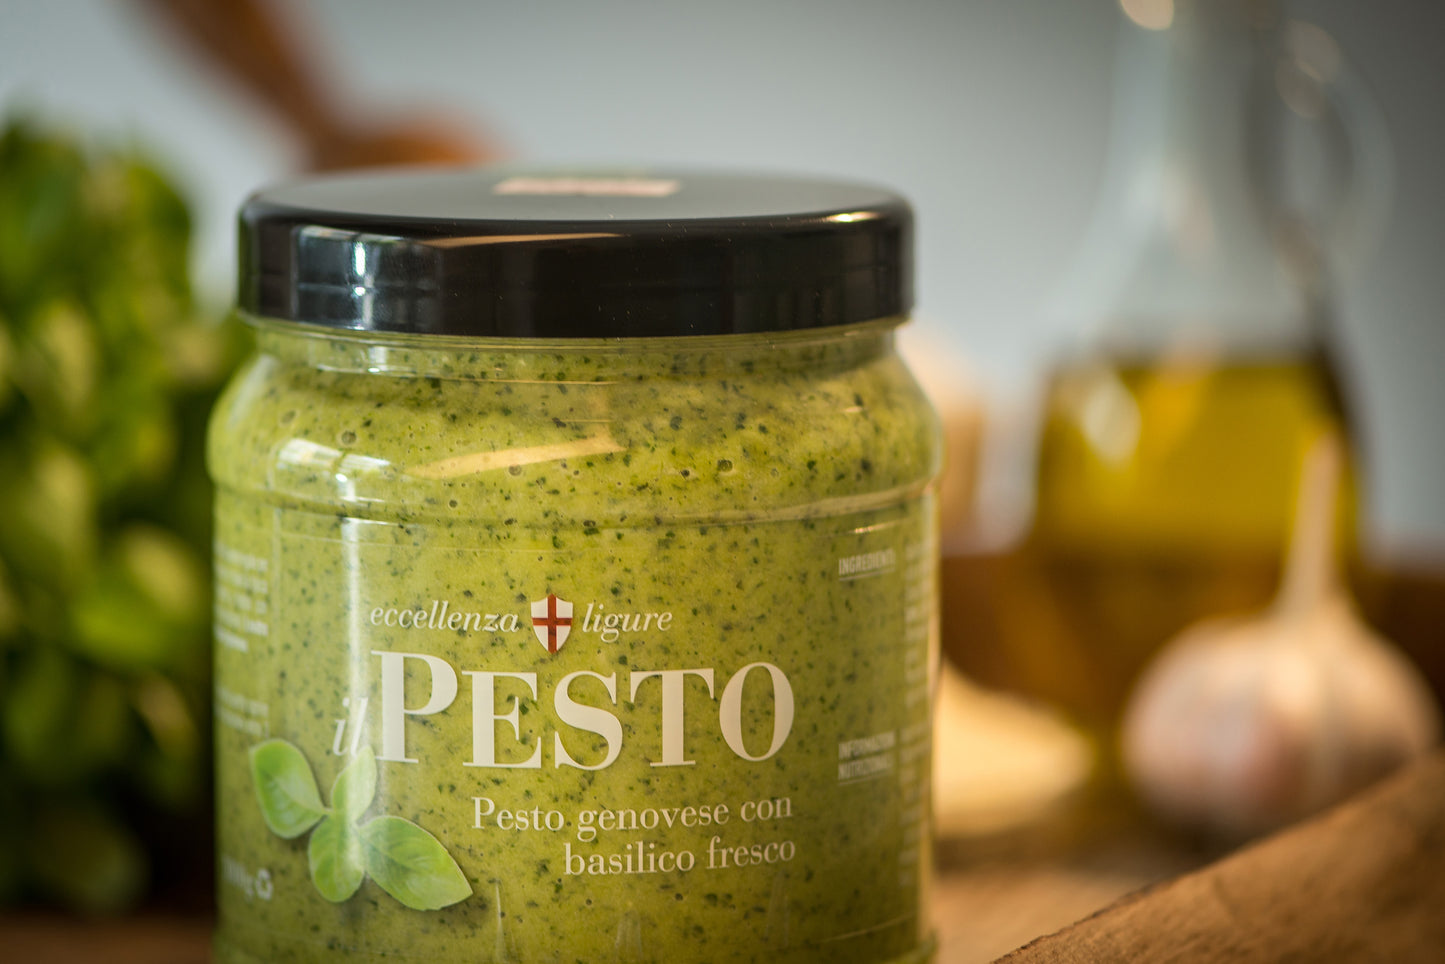 Pesto Genovese con Basilico Fresco 4 barattoli da 250g- Imballo e spedizione nazionale Inclusa!